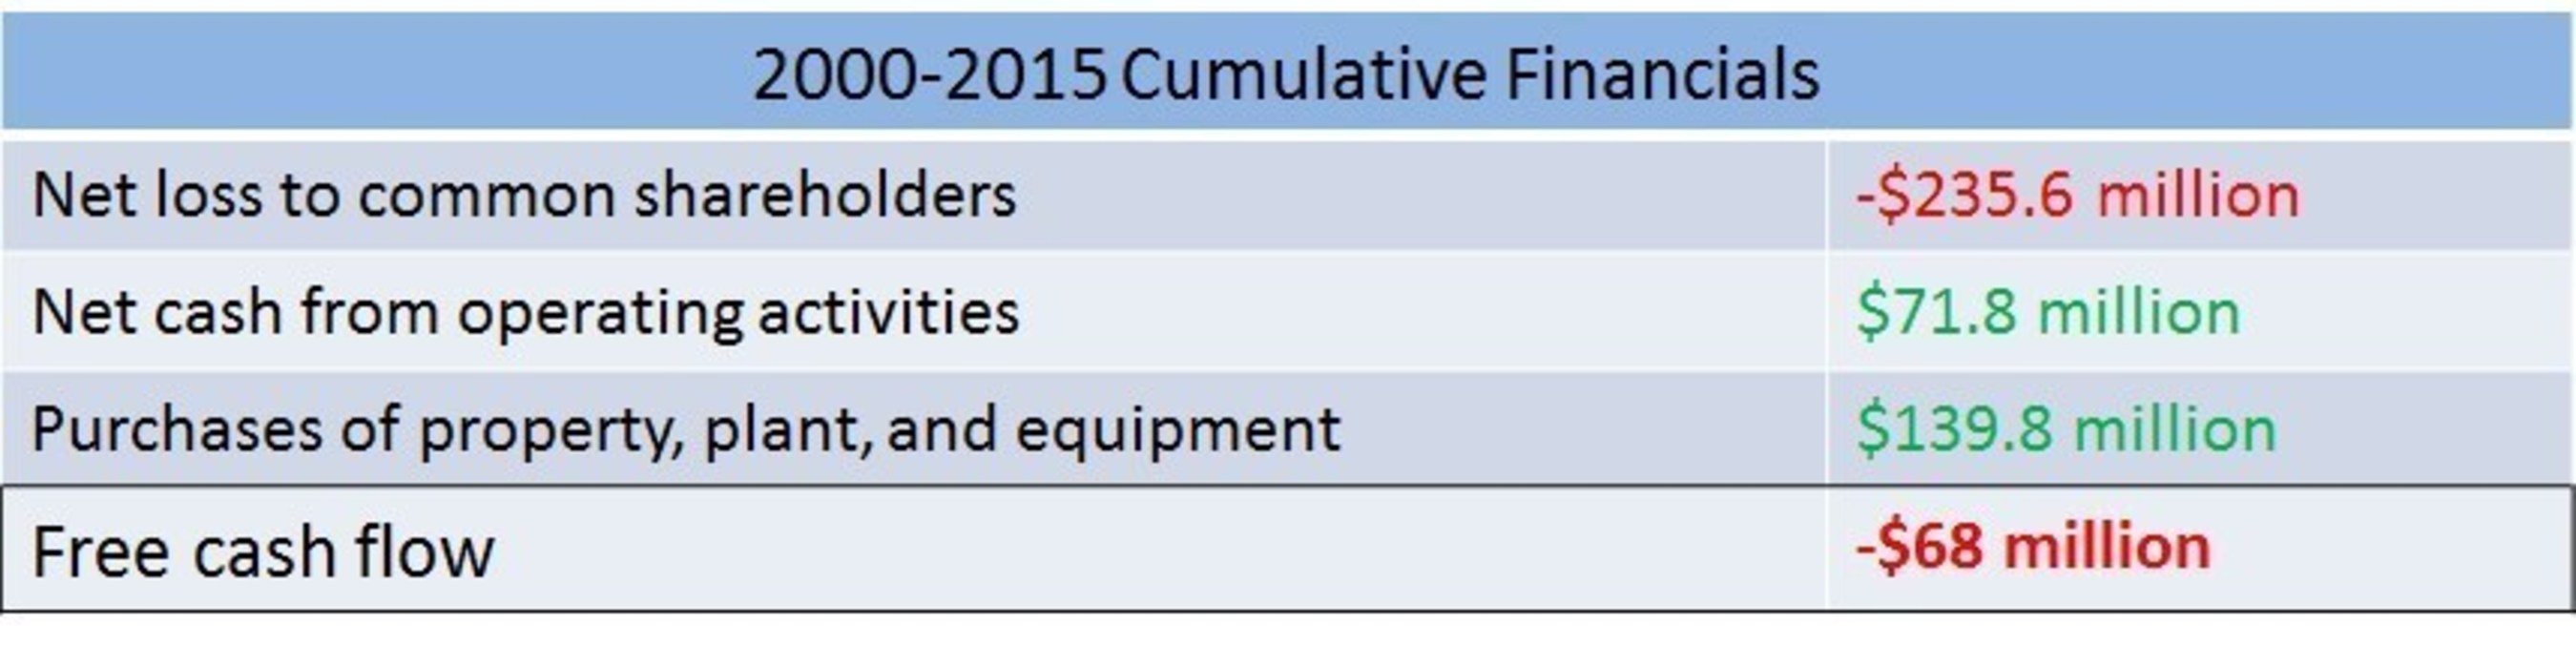 2000-2015 Cumulative Financials